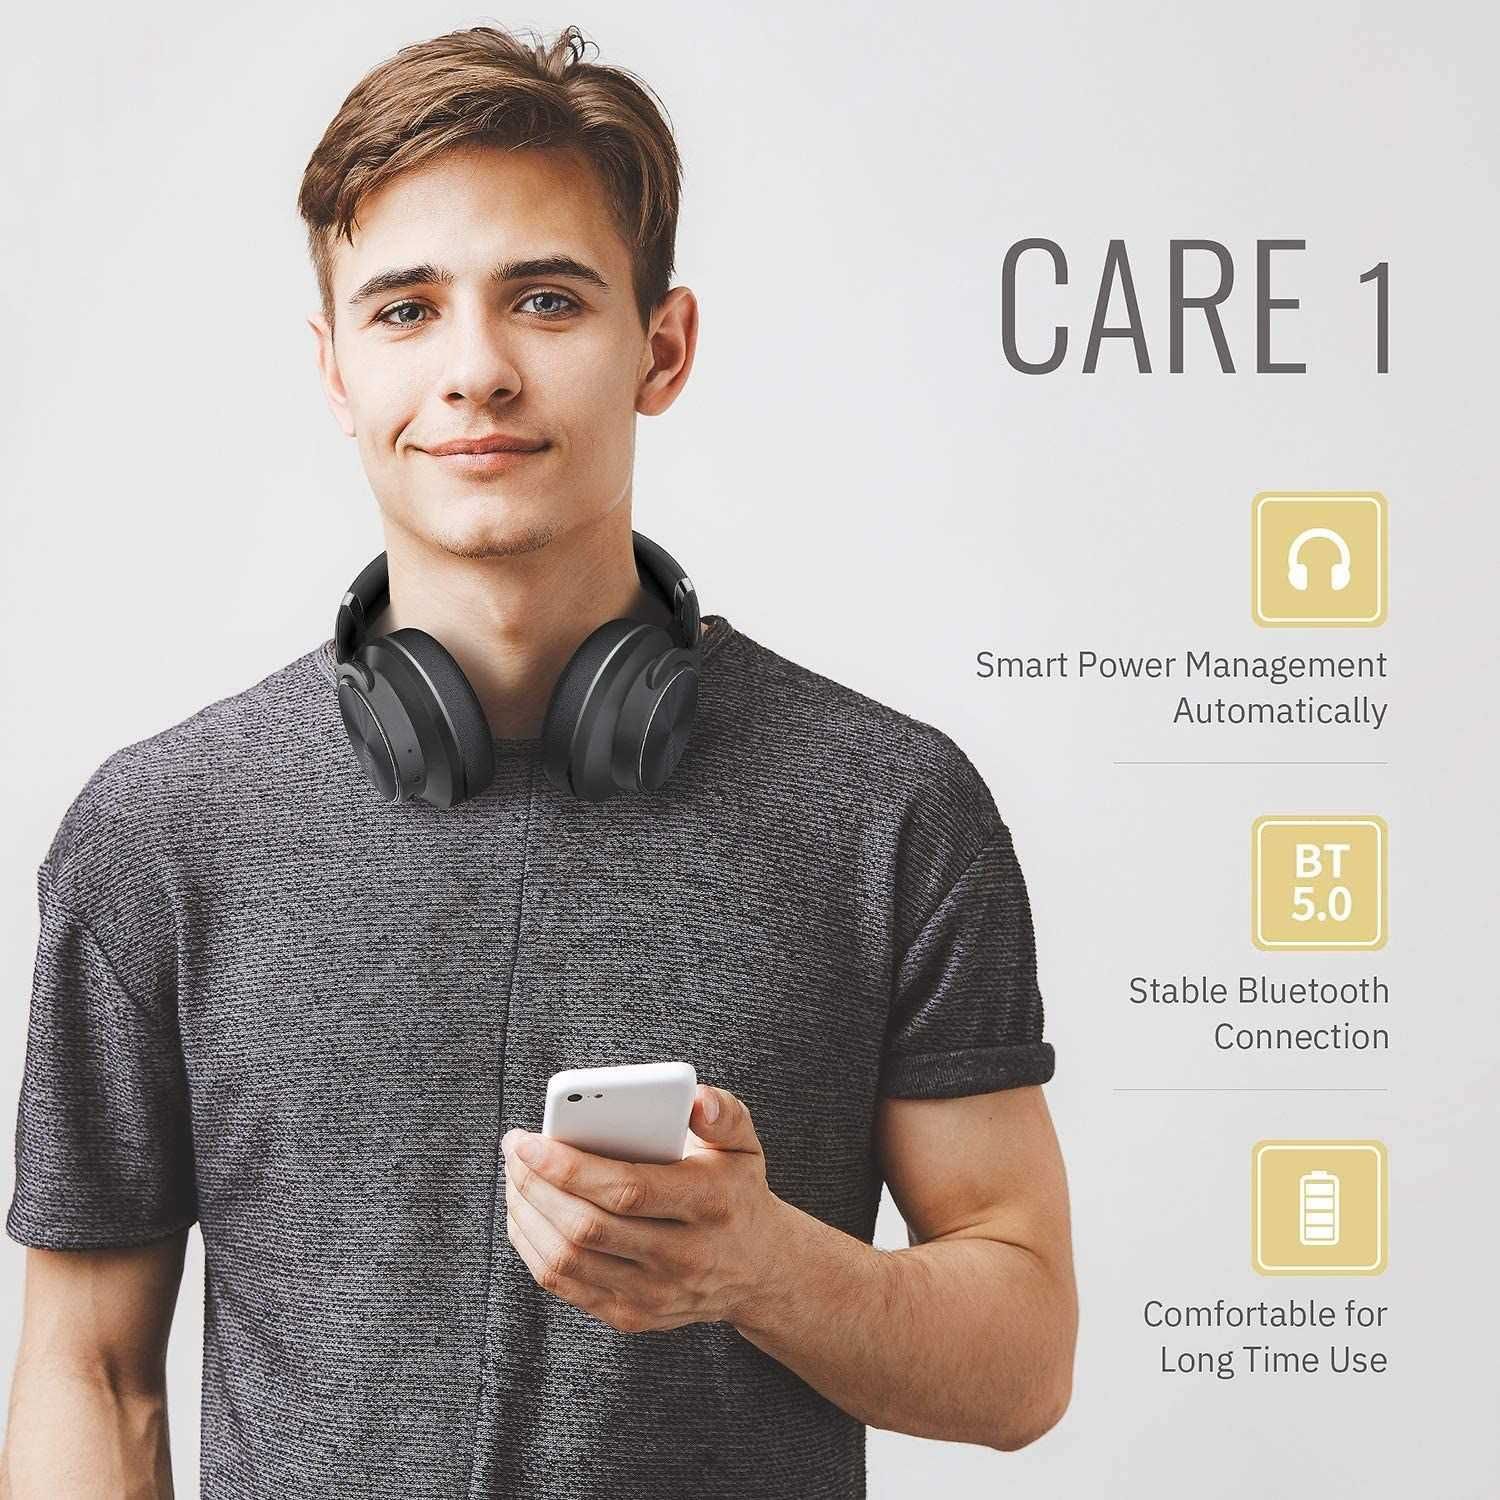 DOQAUS Care 1 Słuchawki bezprzewodowe EQ, Stereo HiFi Bluetooth,